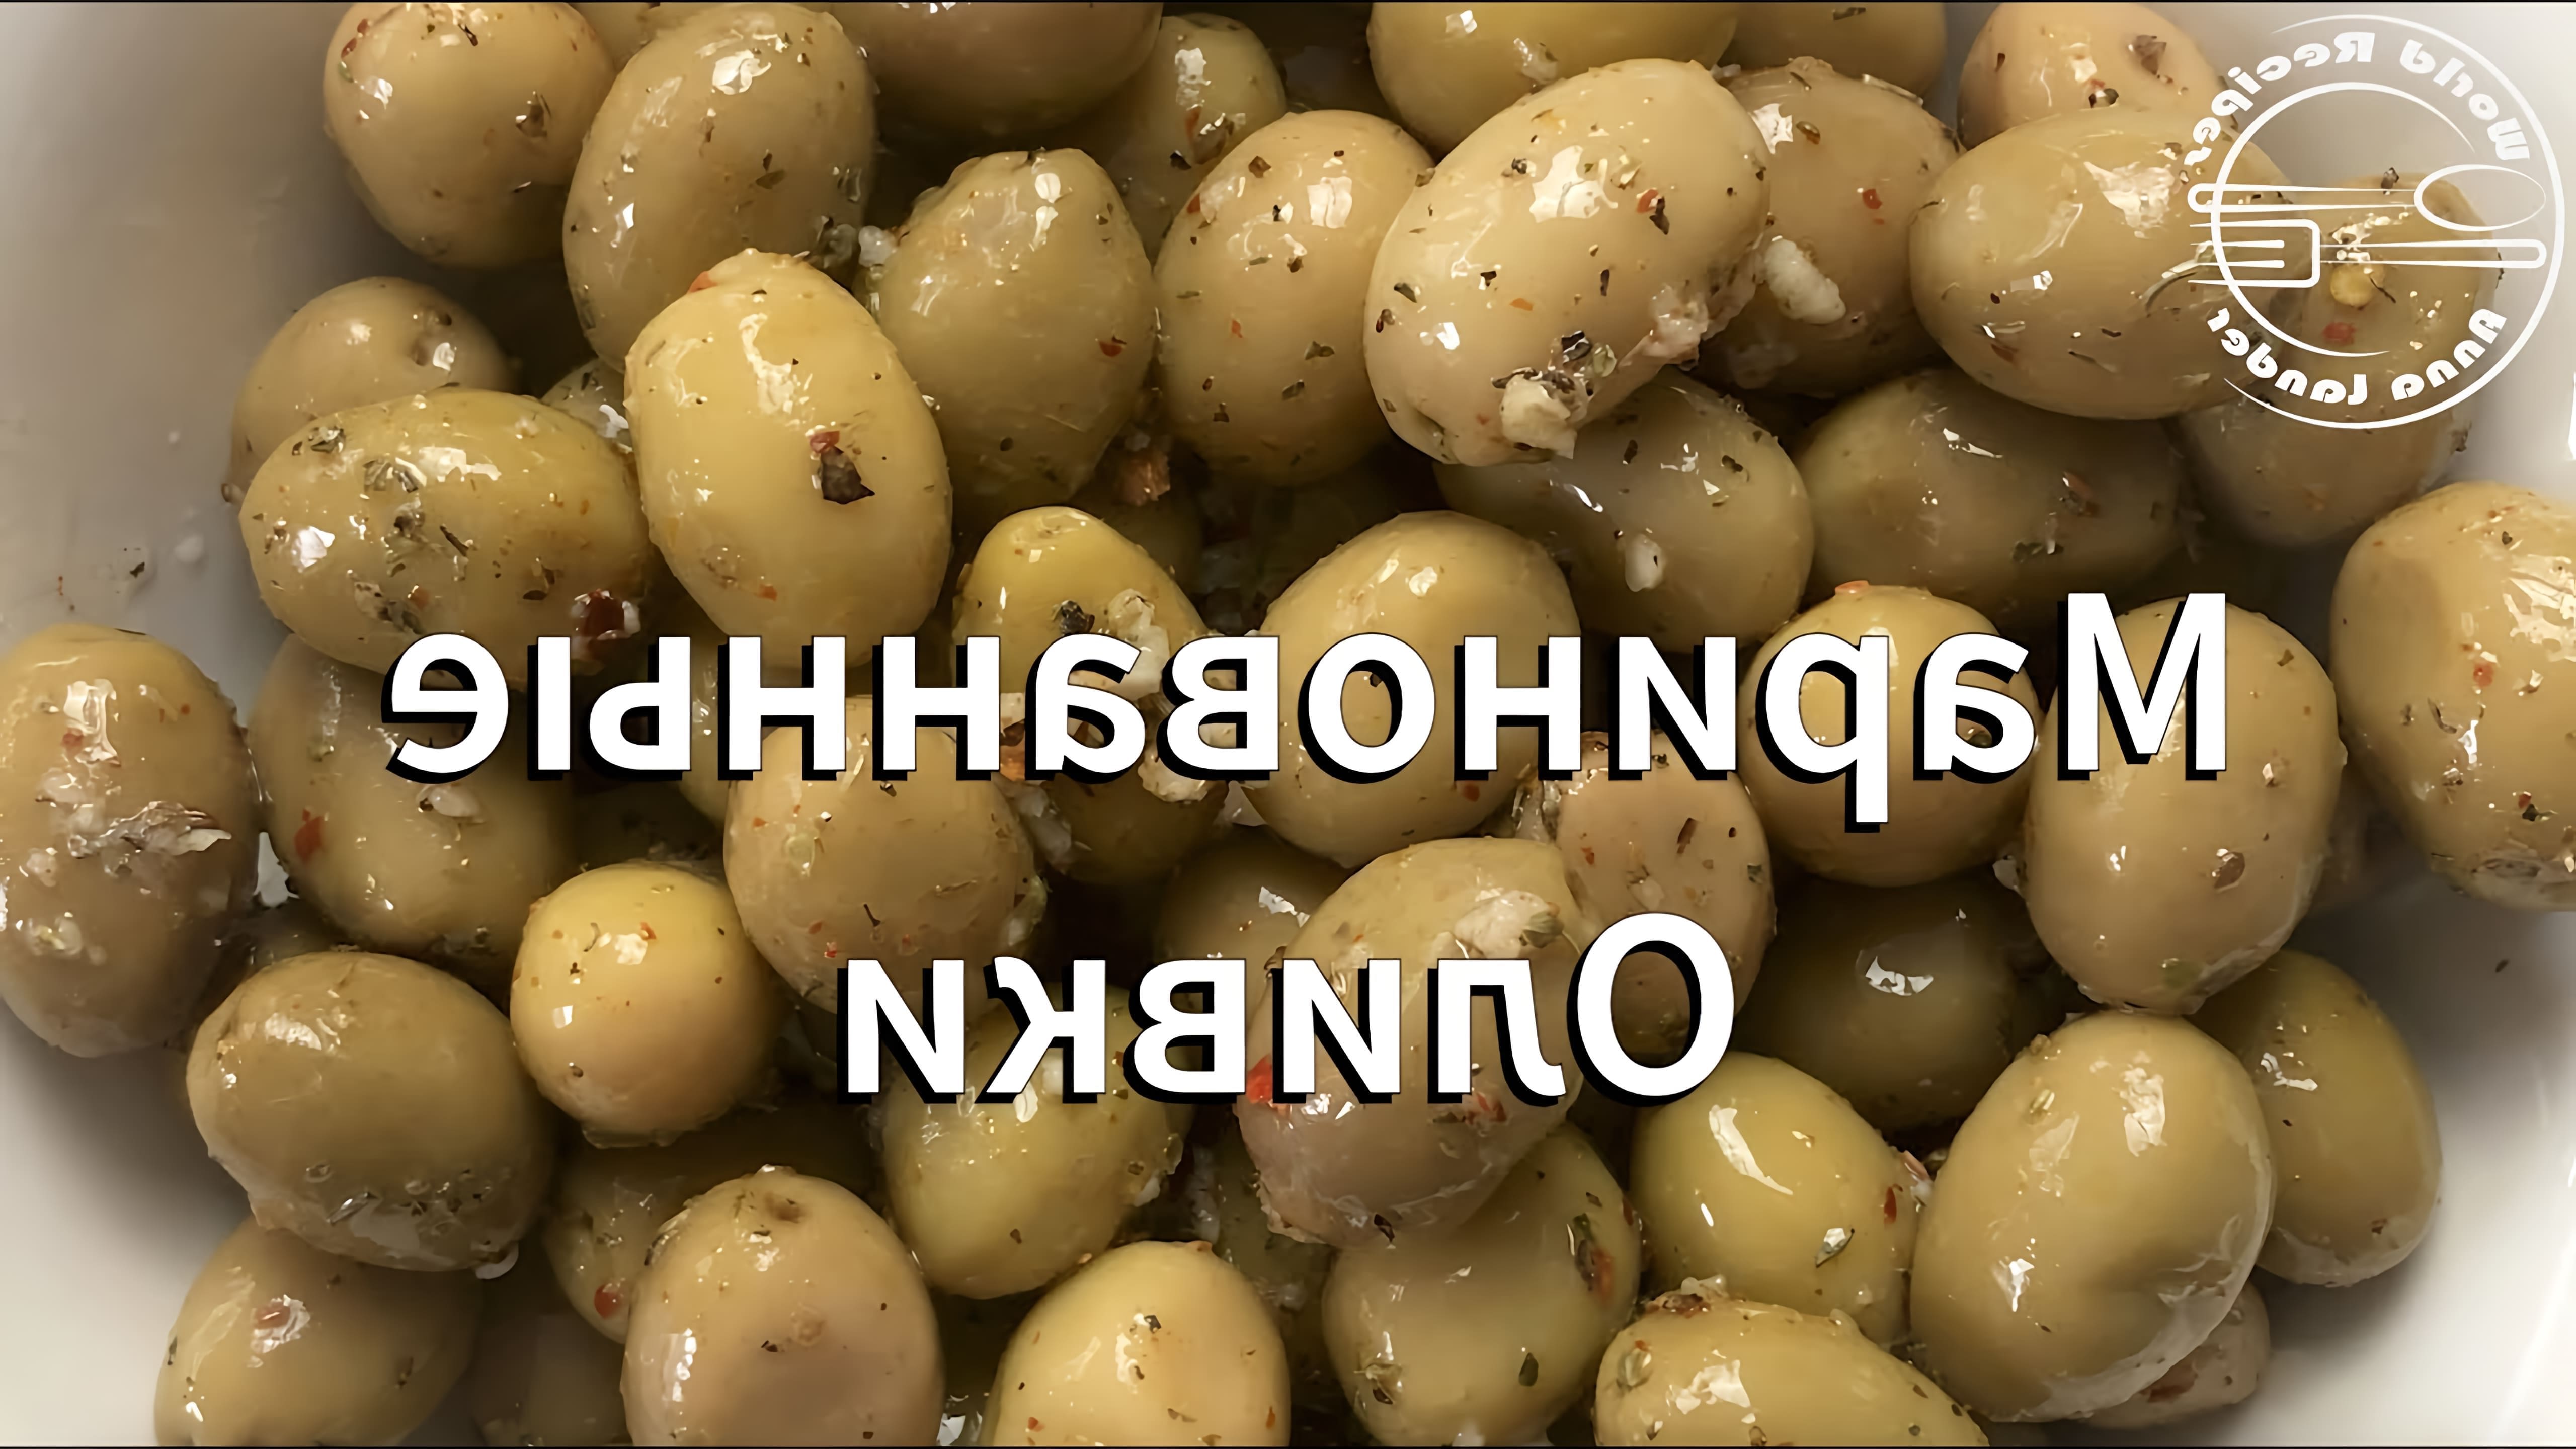 Маринованные оливки - это вкусное и полезное блюдо, которое можно приготовить в домашних условиях